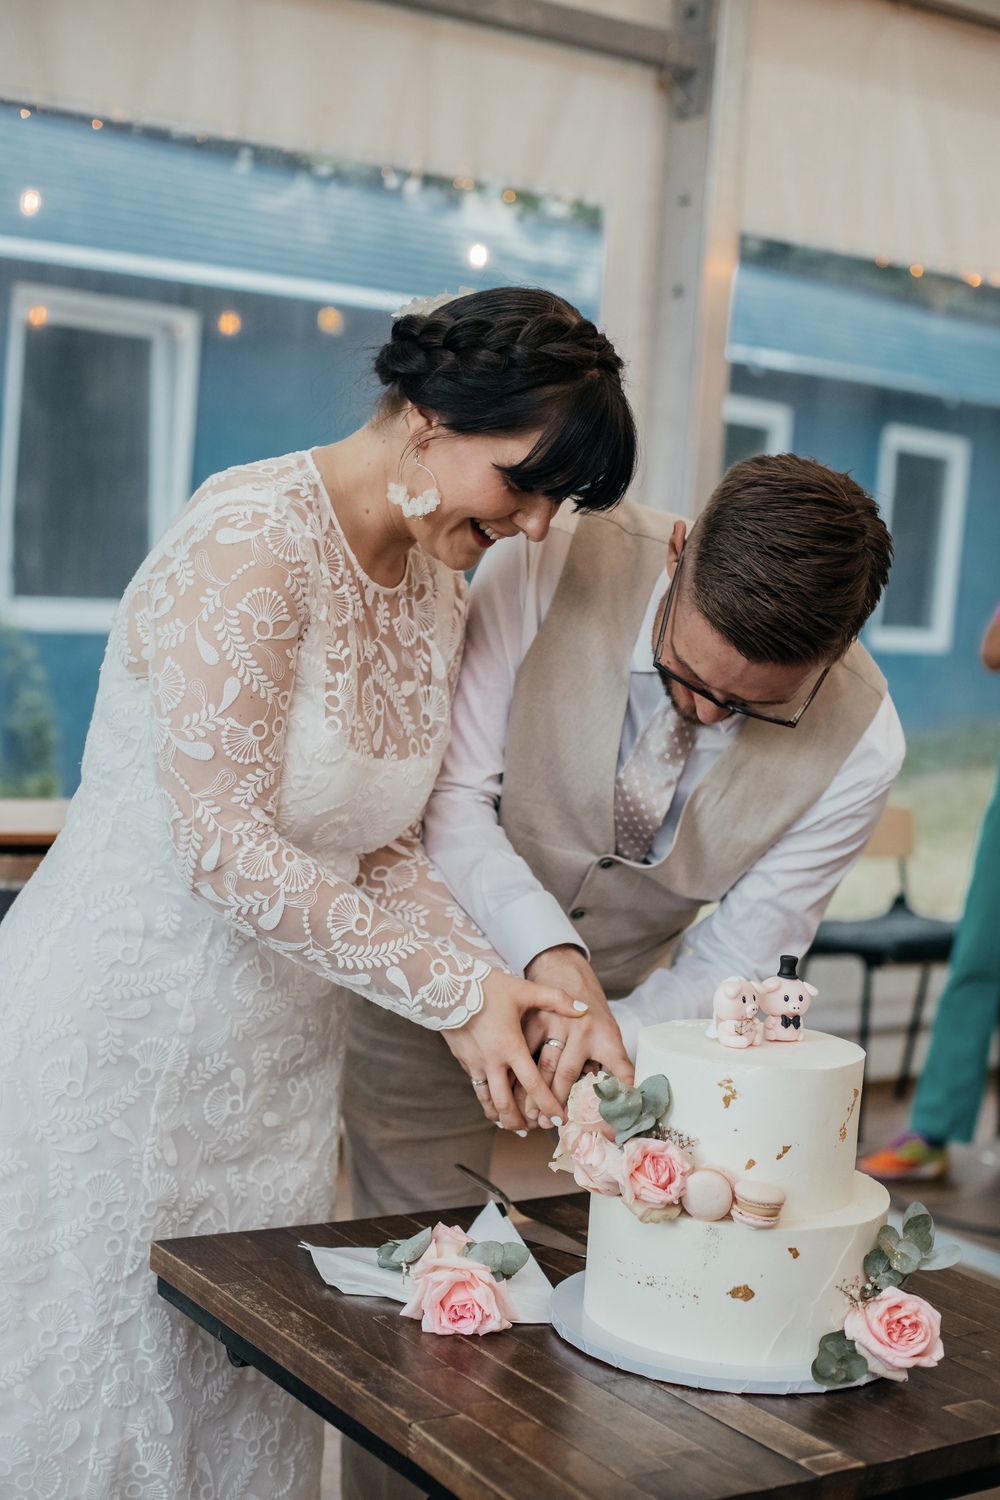 Uroczyste krojenie tortu weselnego - moment pełen emocji